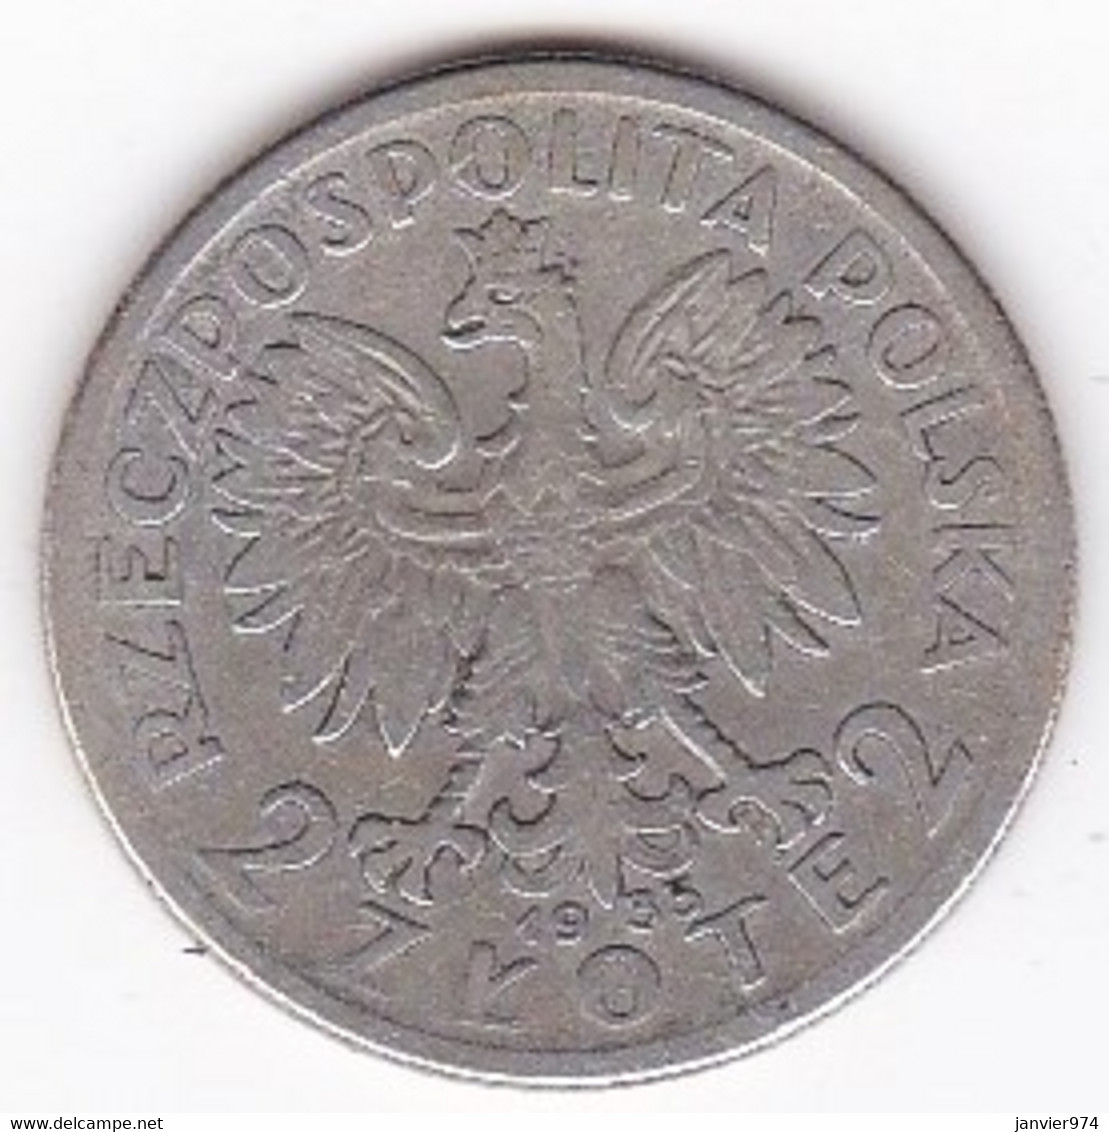 POLOGNE . 2 ZLOTE 1933. ARGENT - Poland